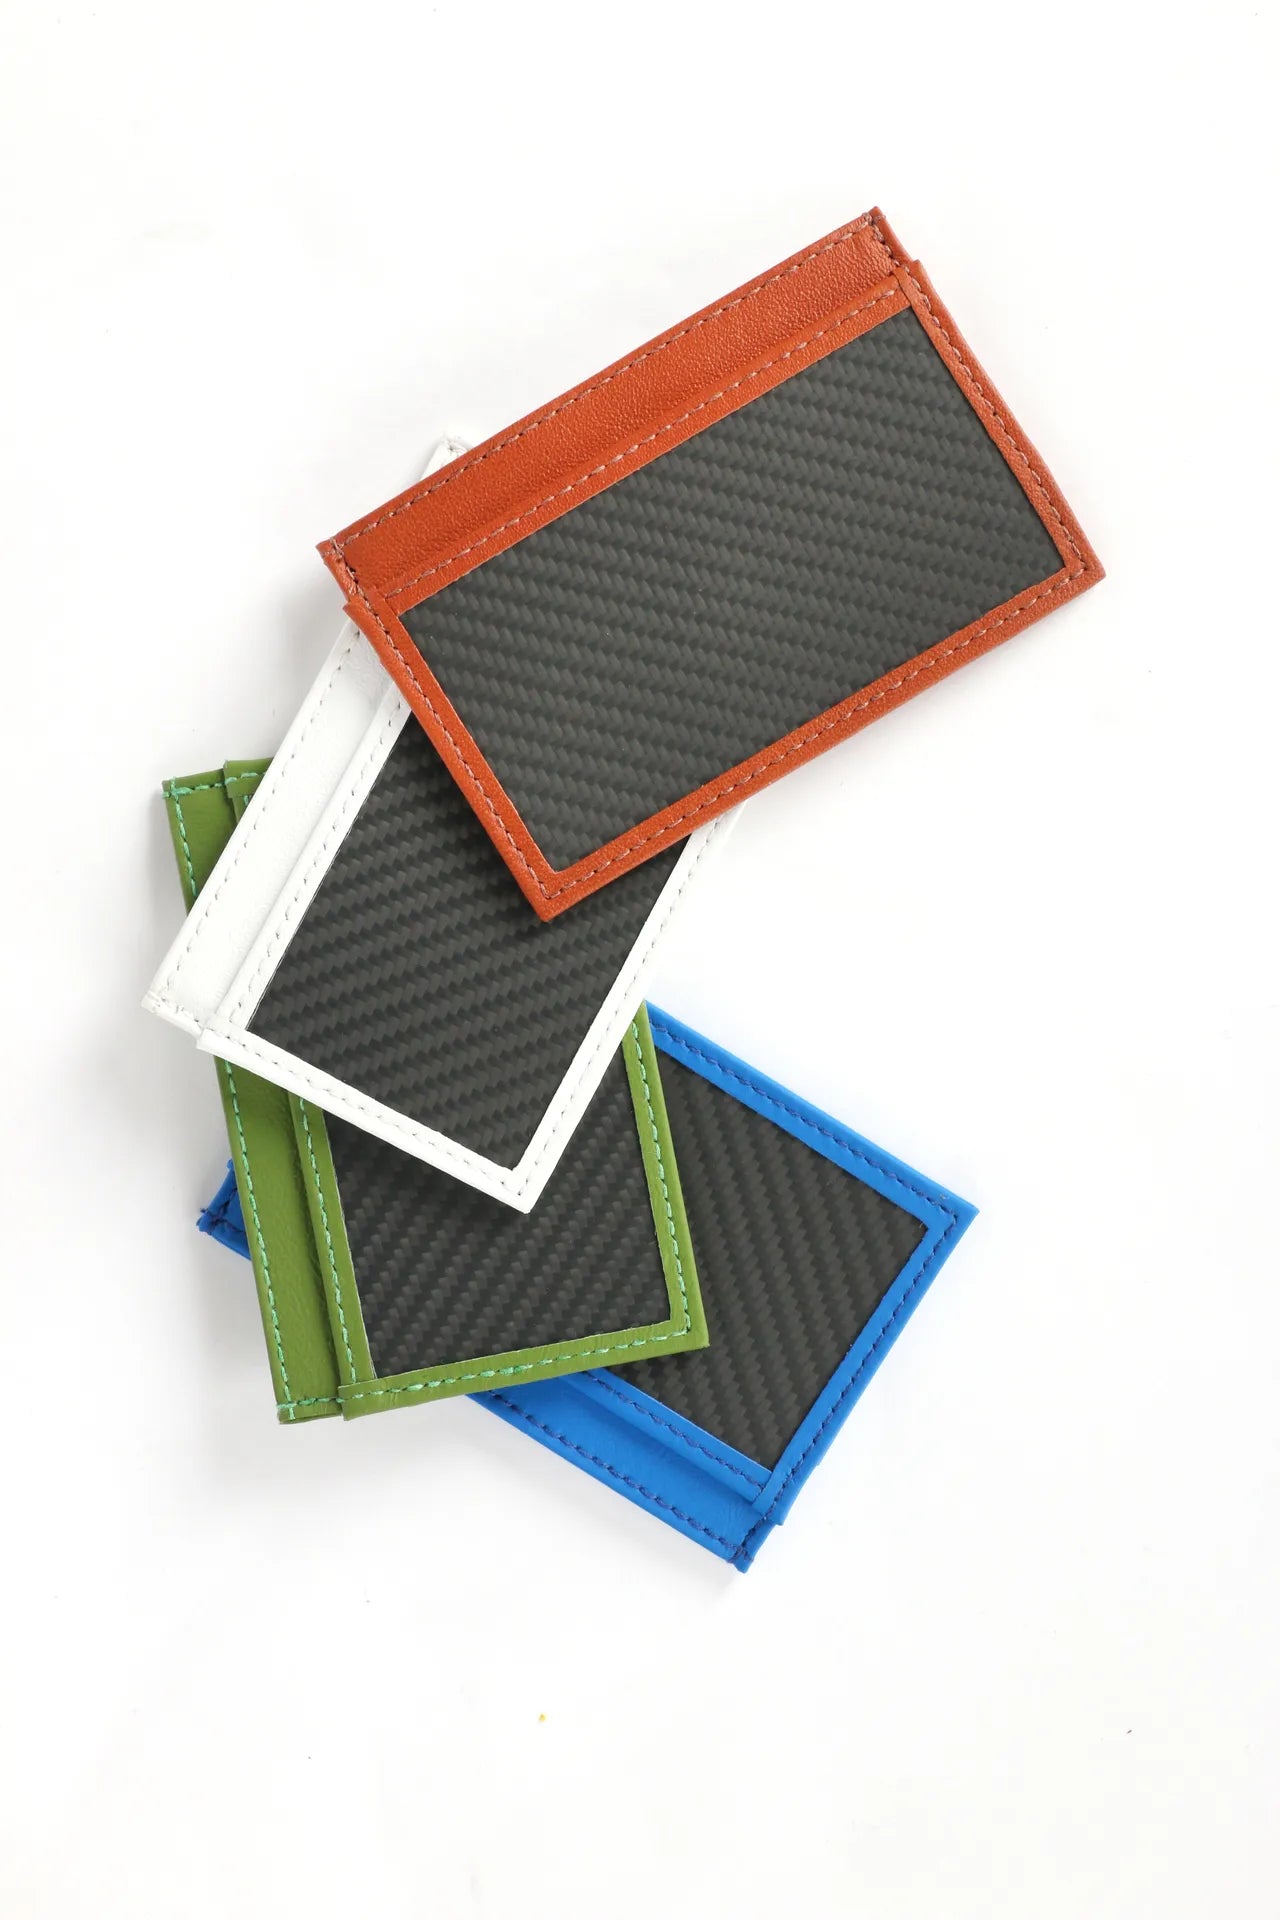 8 種顏色的軟碳纖維名片盒